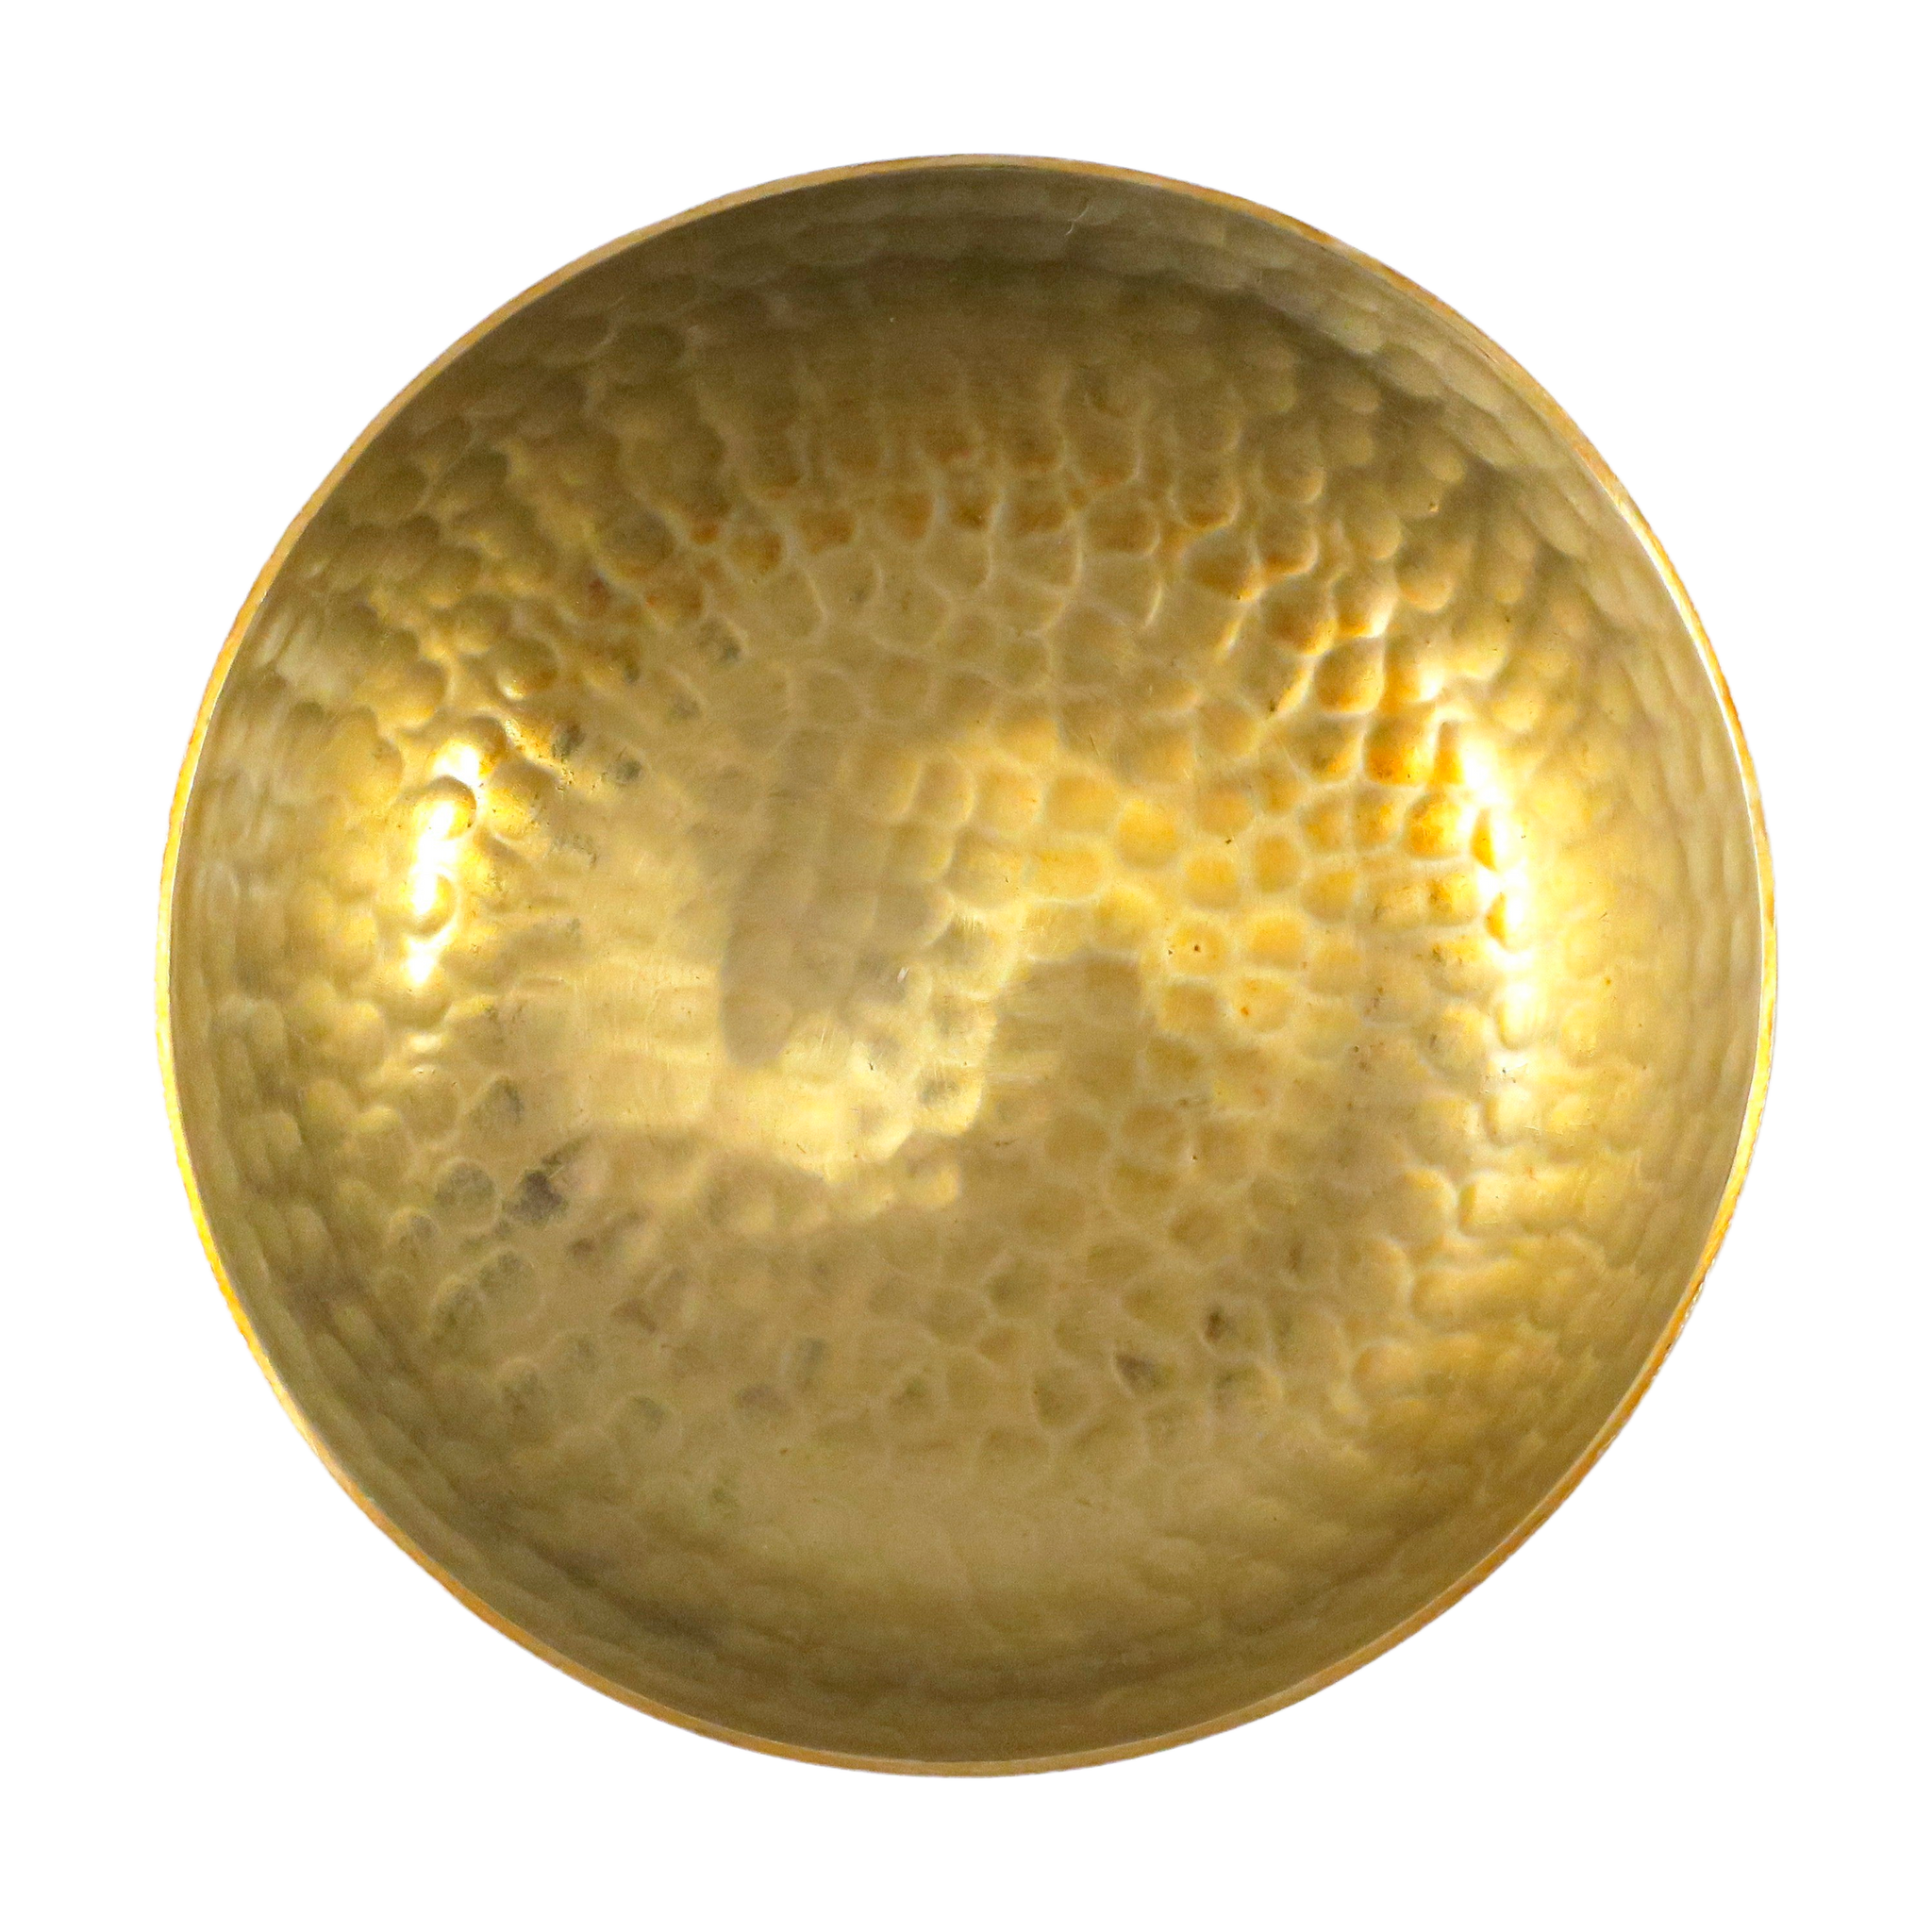 68818 HAMMERED Decorative bowl Diam.12cm